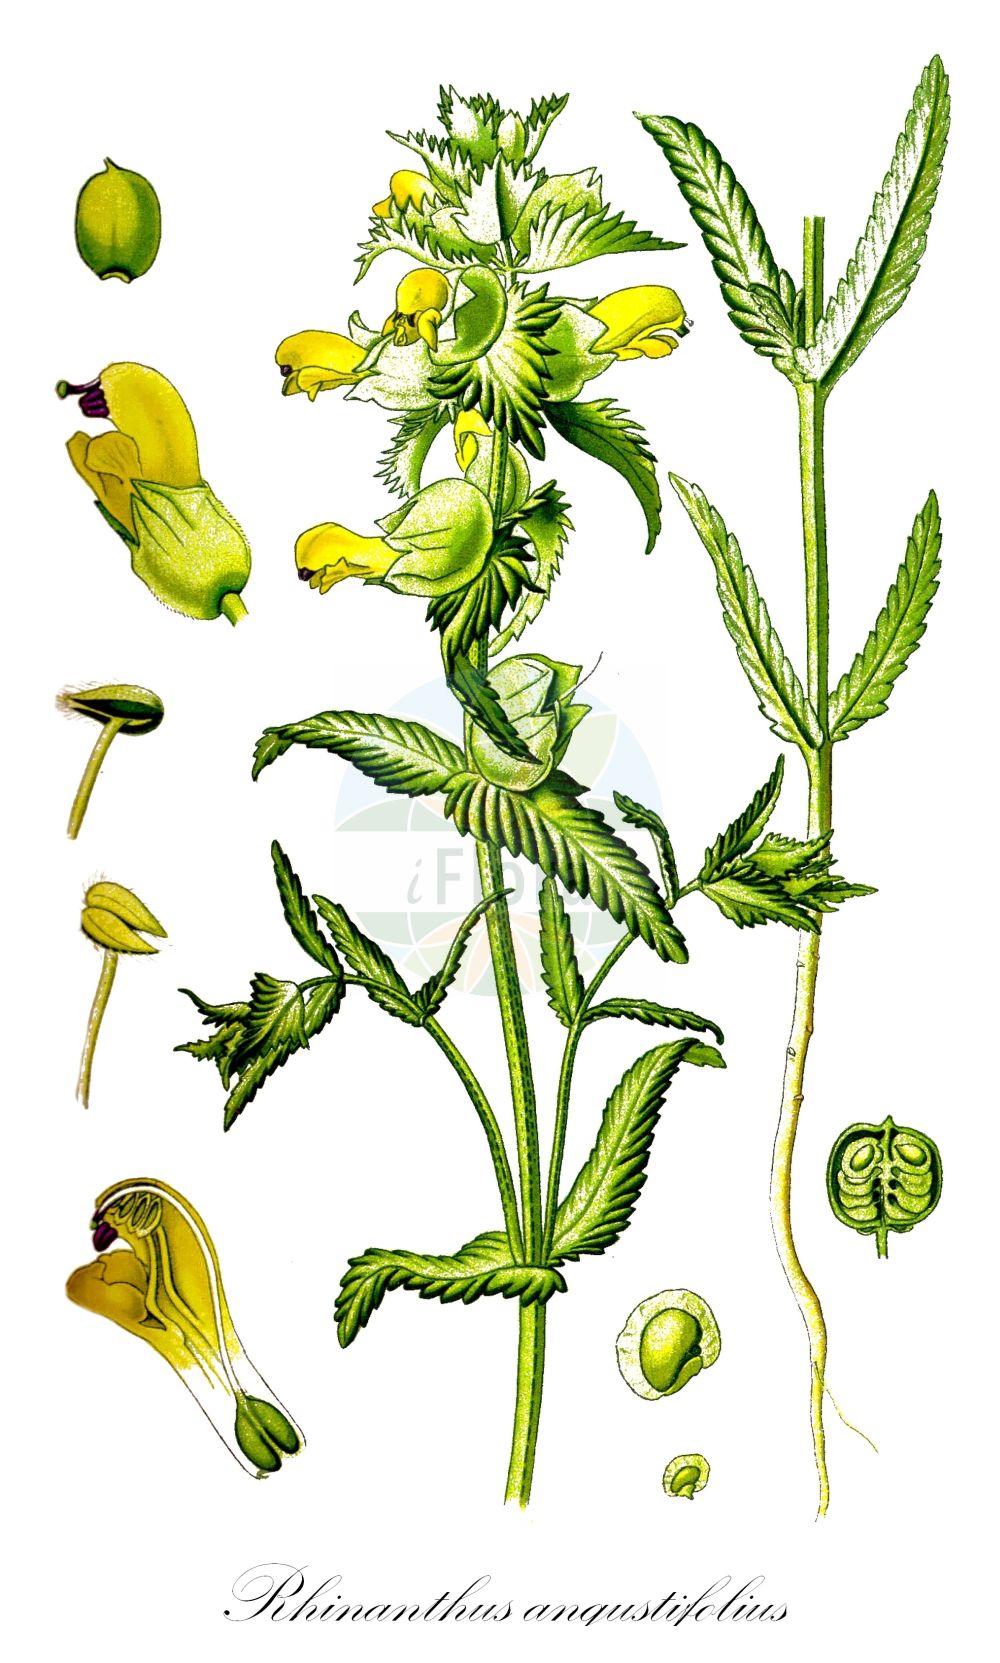 Historische Abbildung von Rhinanthus angustifolius (Acker-Klappertopf - Late-flowering Yellow Rattle). Das Bild zeigt Blatt, Bluete, Frucht und Same. ---- Historical Drawing of Rhinanthus angustifolius (Acker-Klappertopf - Late-flowering Yellow Rattle). The image is showing leaf, flower, fruit and seed.(Rhinanthus angustifolius,Acker-Klappertopf,Late-flowering Yellow Rattle,Alectorolophus angustifolius,Alectorolophus glaber,Alectorolophus major,Alectorolophus major Rchb. subsp.,Alectorolophus serotinus,Rhinanthus angustifolius,Rhinanthus glaber,Rhinanthus paludosus,Rhinanthus serotinus,Rhinanthus serotinus subsp. polycladus,Acker-Klappertopf,Grosser Klappertopf,Late-flowering Yellow Rattle,Greater Yellow Rattle,Narrow-leaved Yellow Rattle,Southern Yellow Rattle,Rhinanthus,Klappertopf,Yellow Rattle,Orobanchaceae,Sommerwurzgewächse,Broomrape family,Blatt,Bluete,Frucht,Same,leaf,flower,fruit,seed,Thomé (1885))